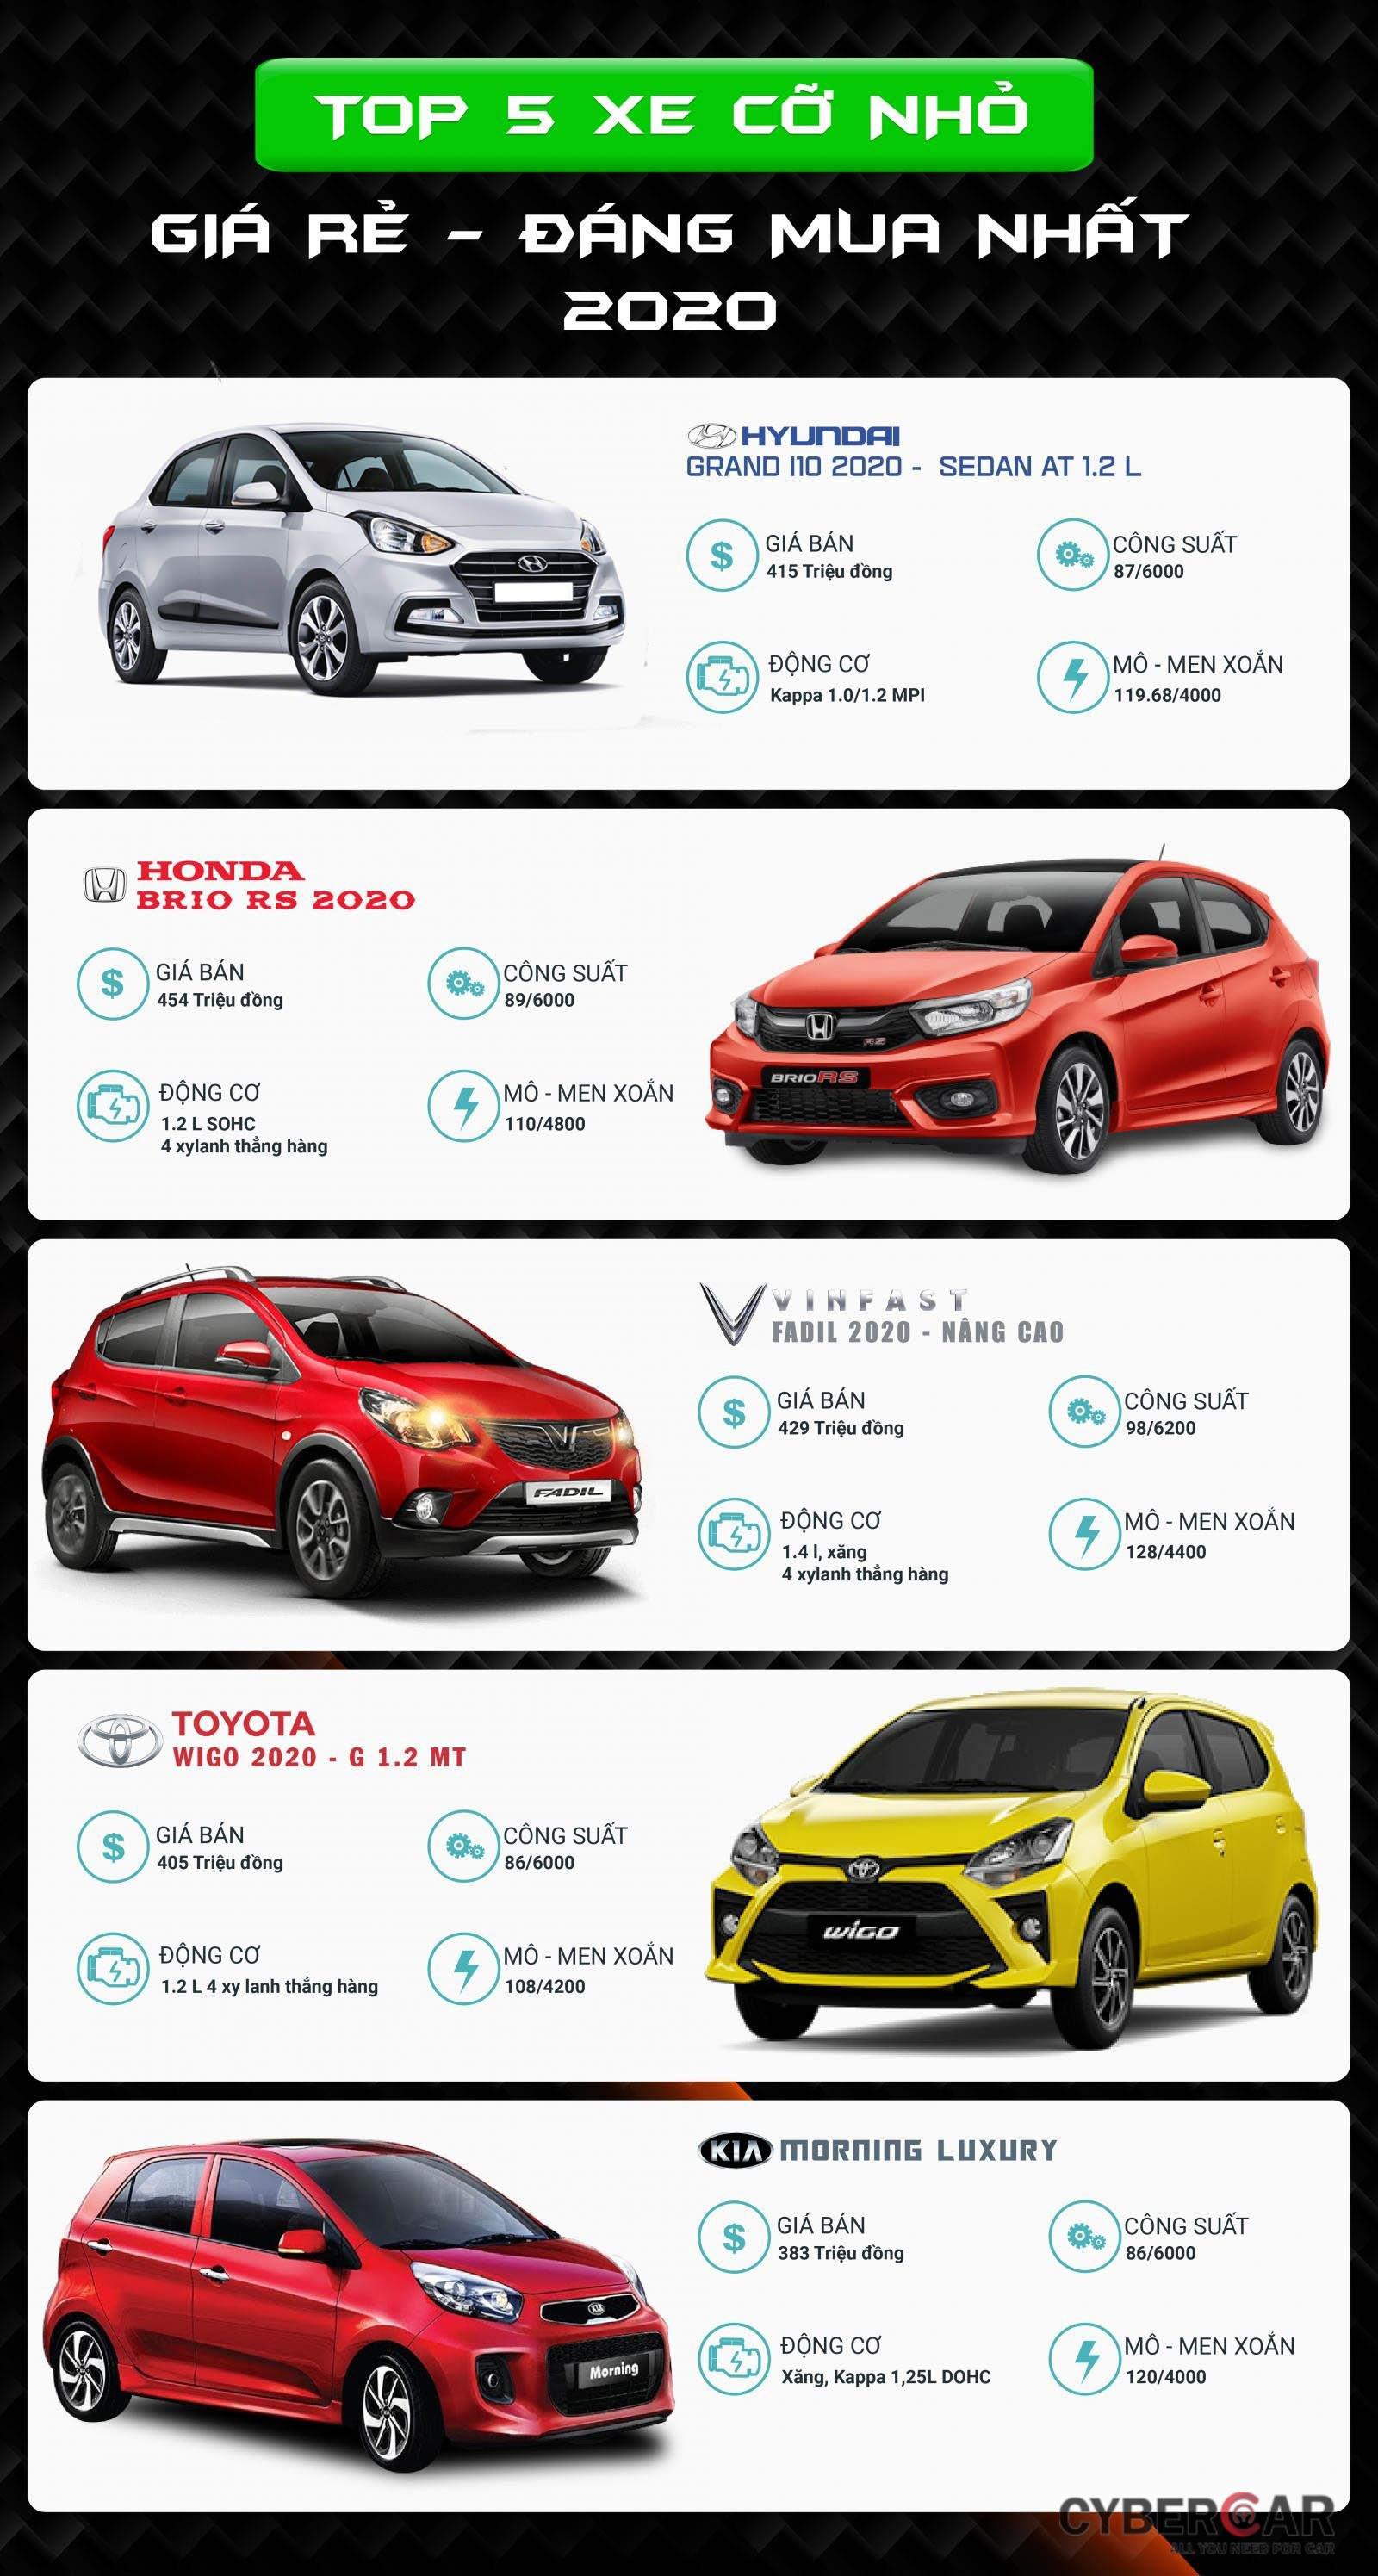 Top 5 xe đô thị cỡ nhỏ giá rẻ thích hợp cho người mua xe lần đầu tại Việt Nam.